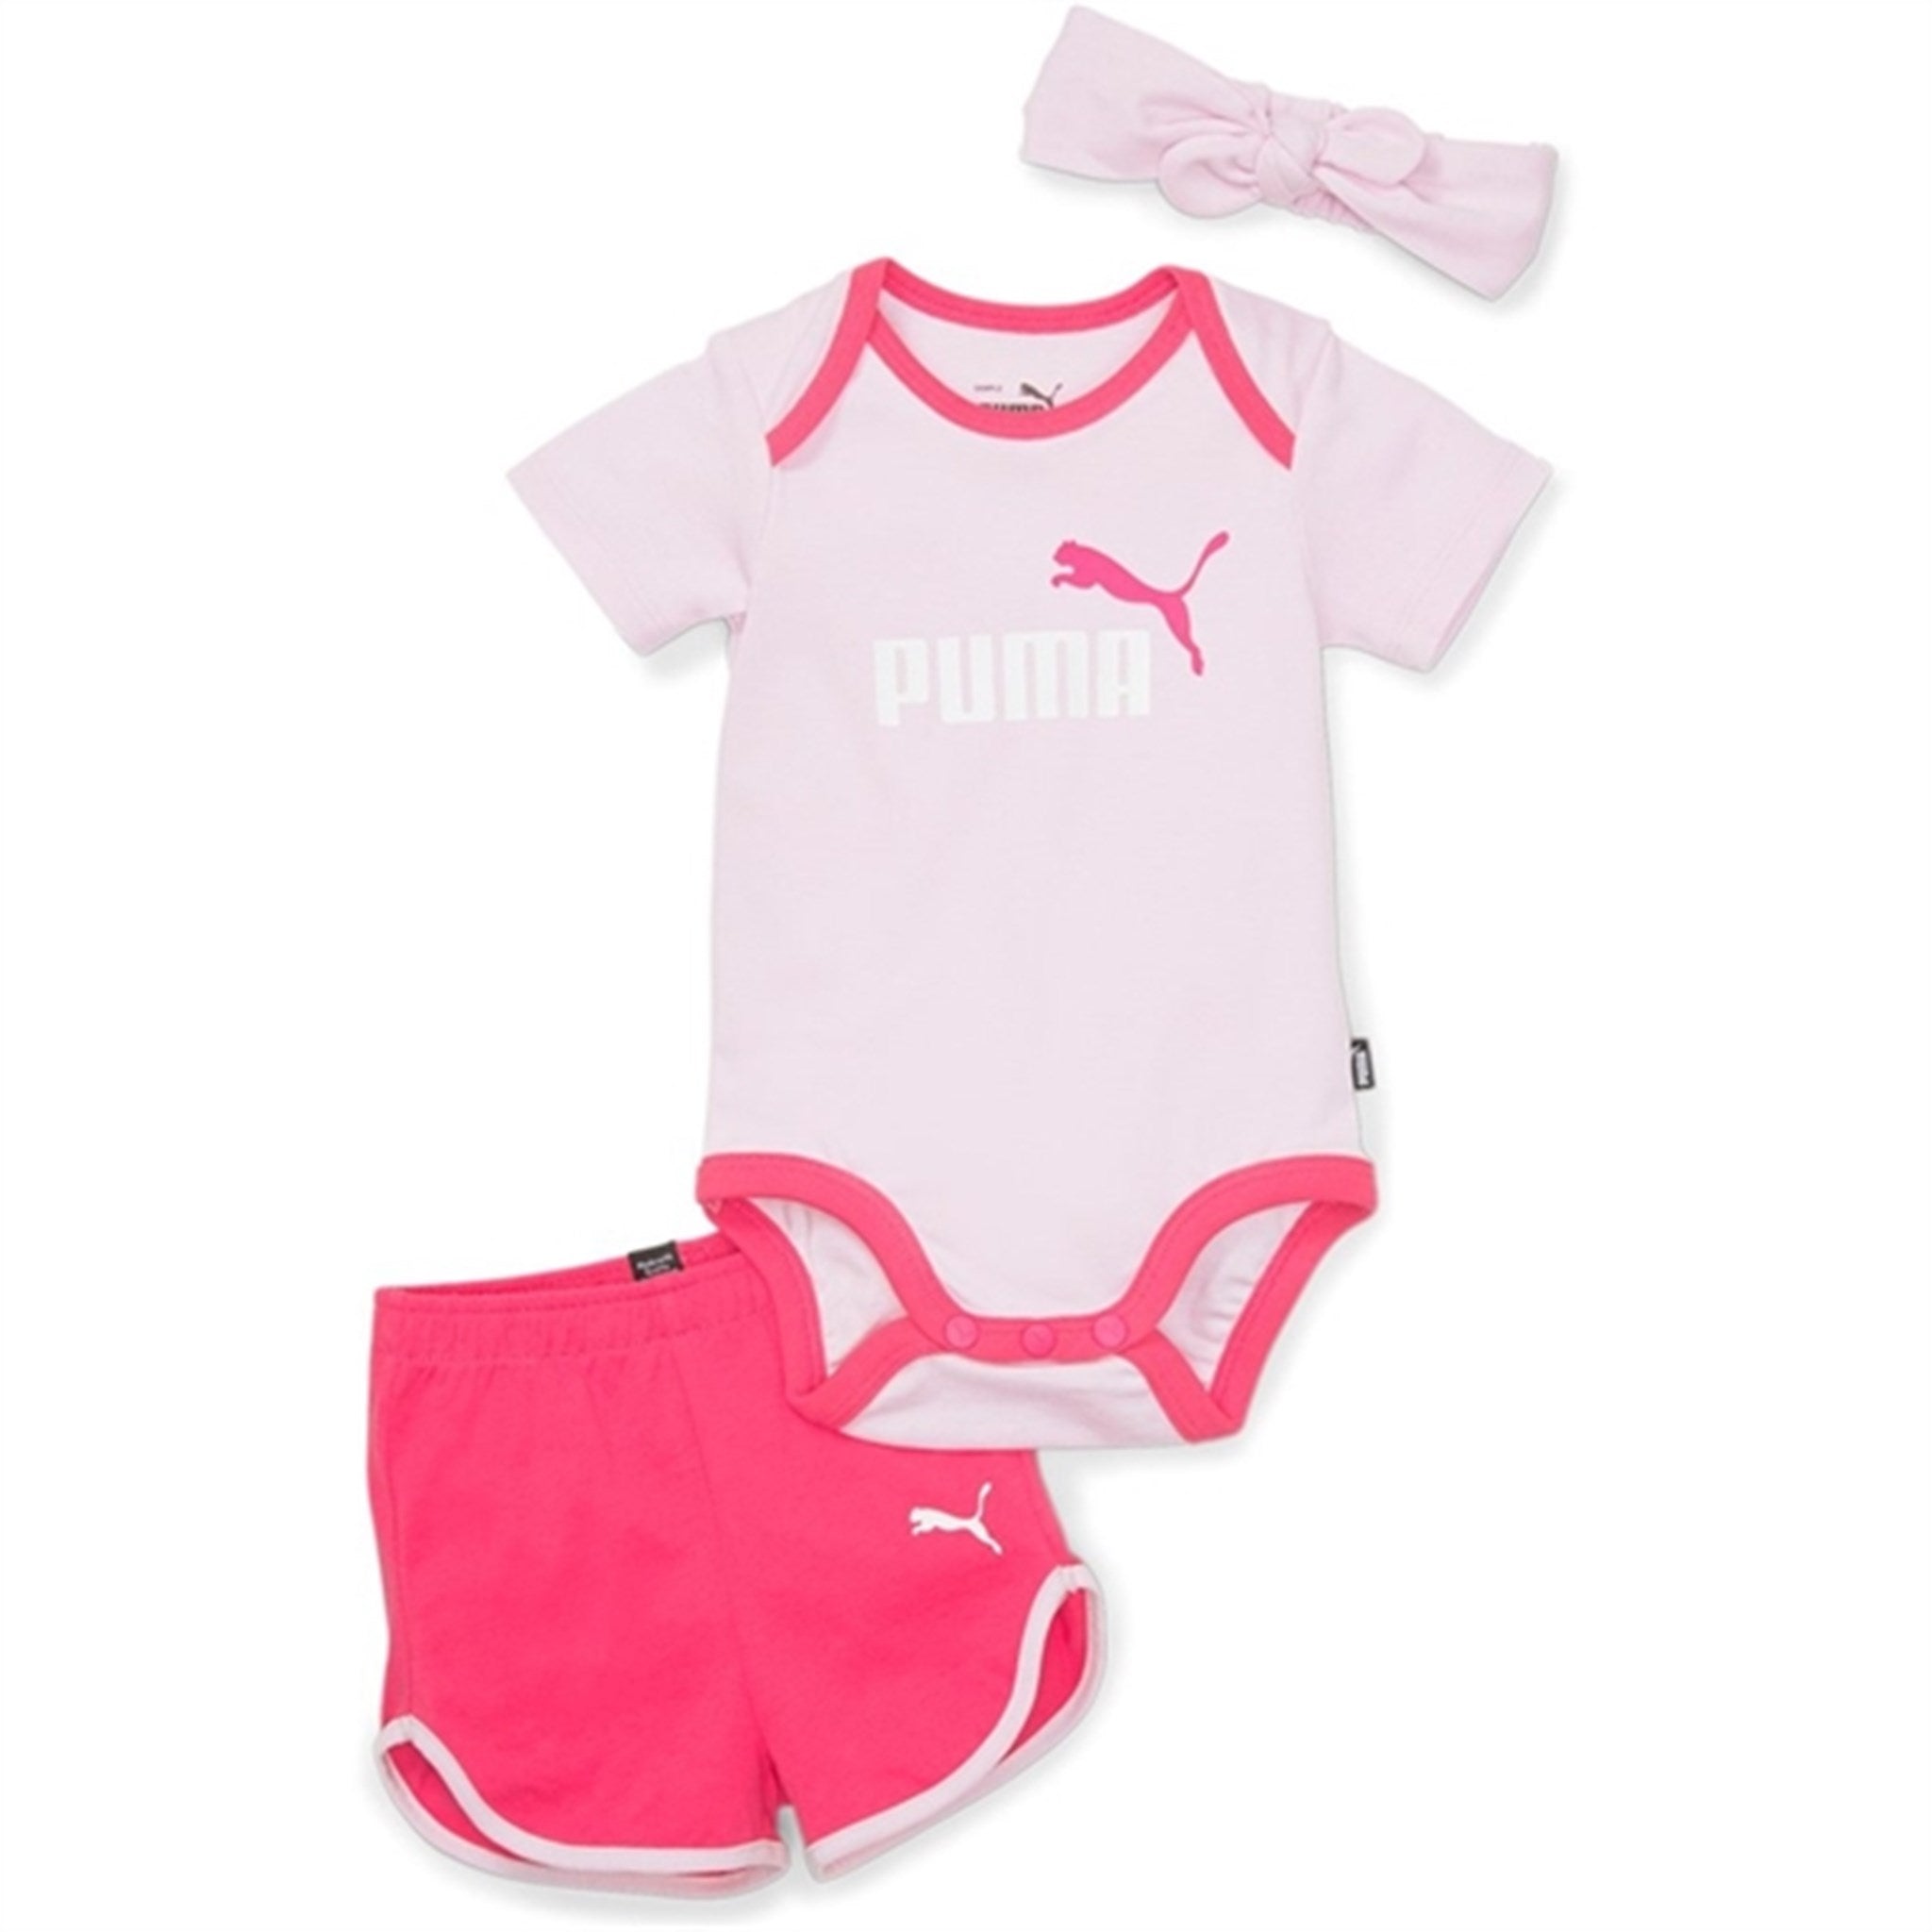 Puma Minicats Bow Newborn Sett Pearl Pink